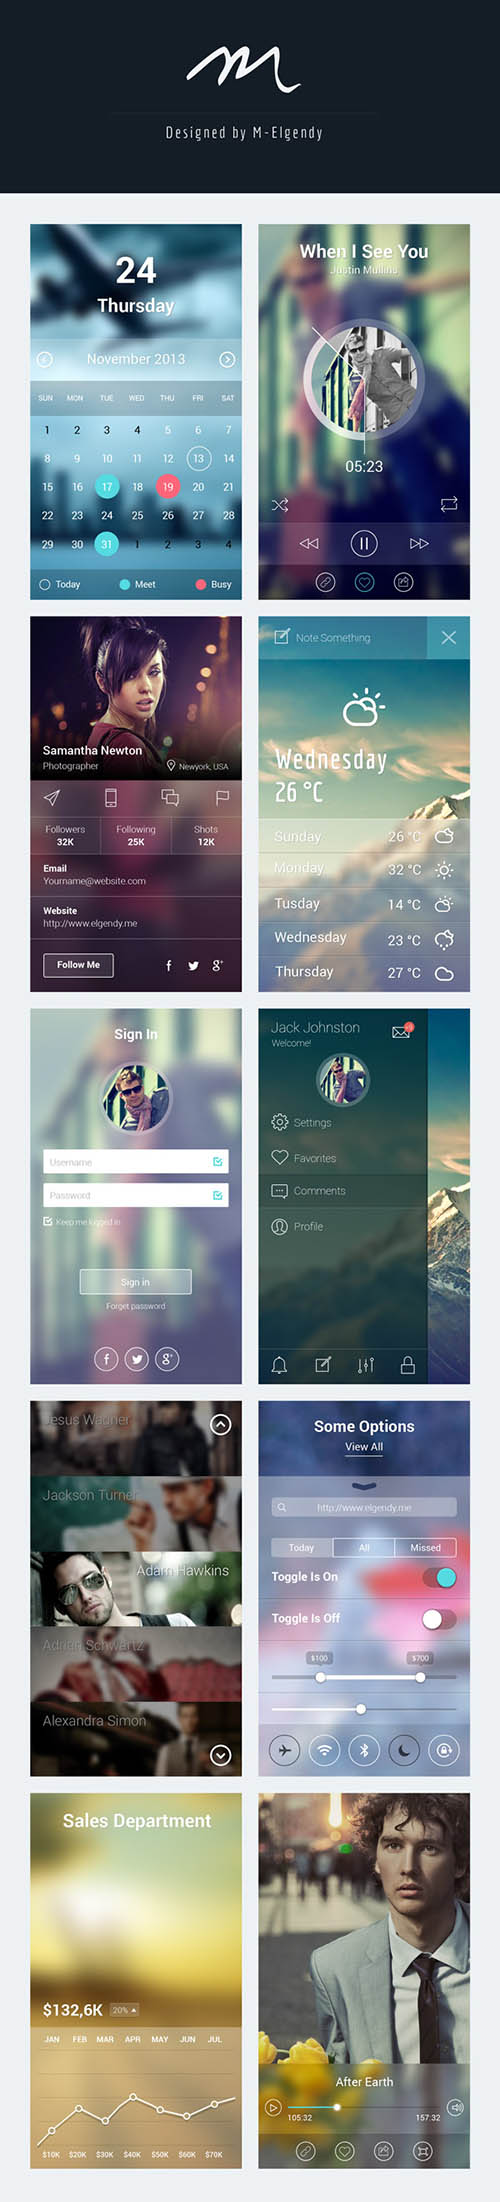 PSD Web Design - iOS 7 App Screens